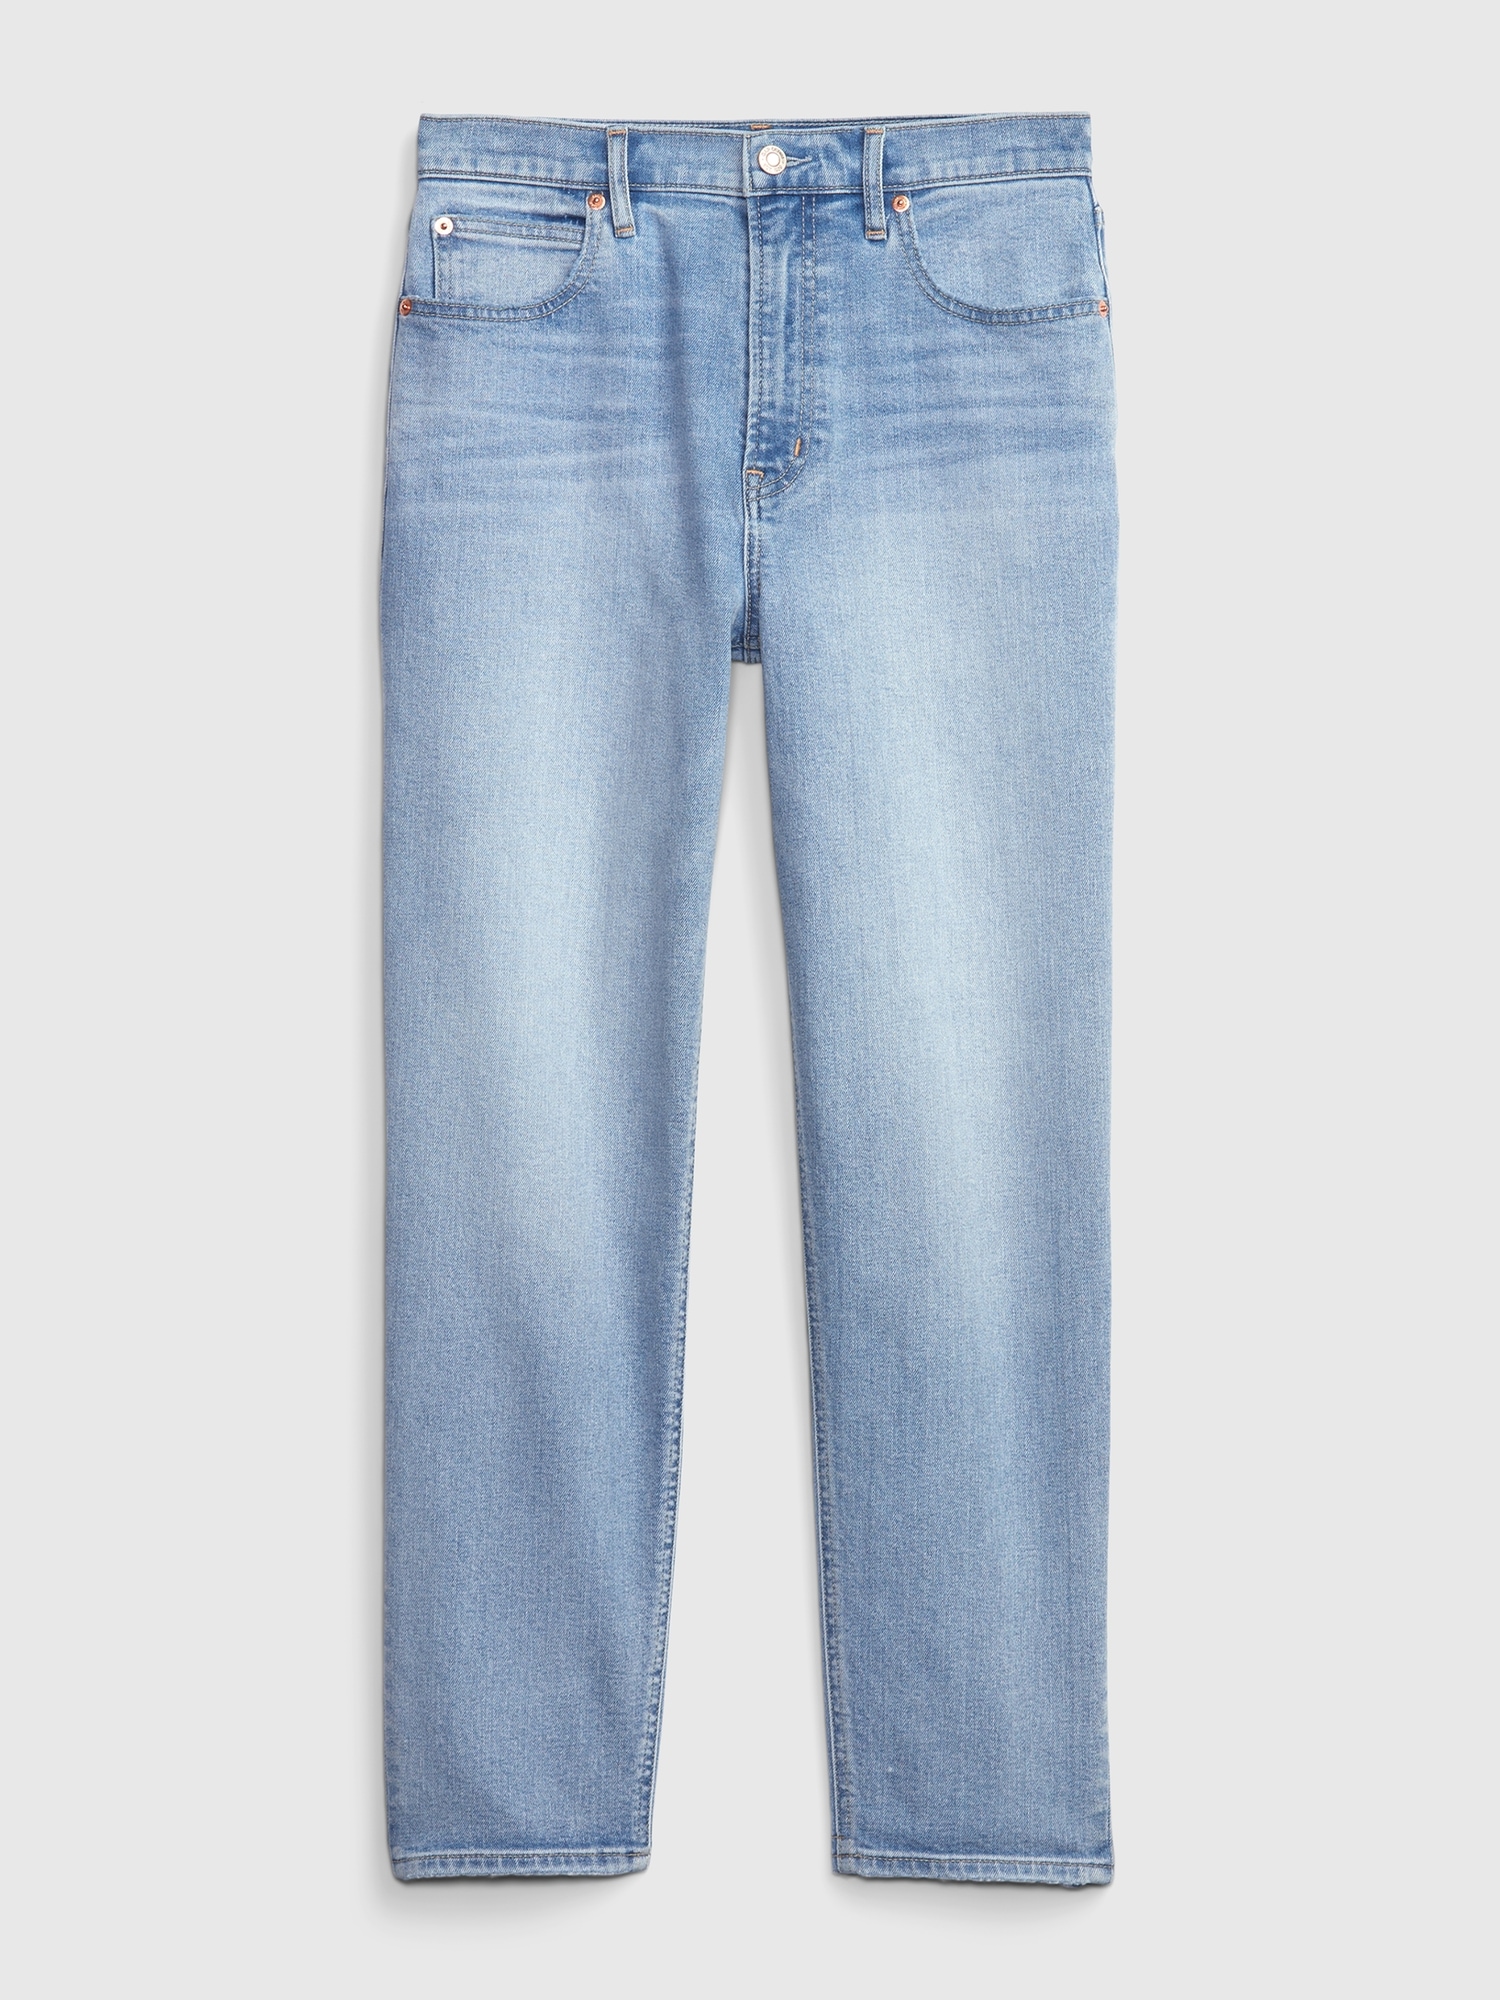 High Rise Taper Jeans | Gap